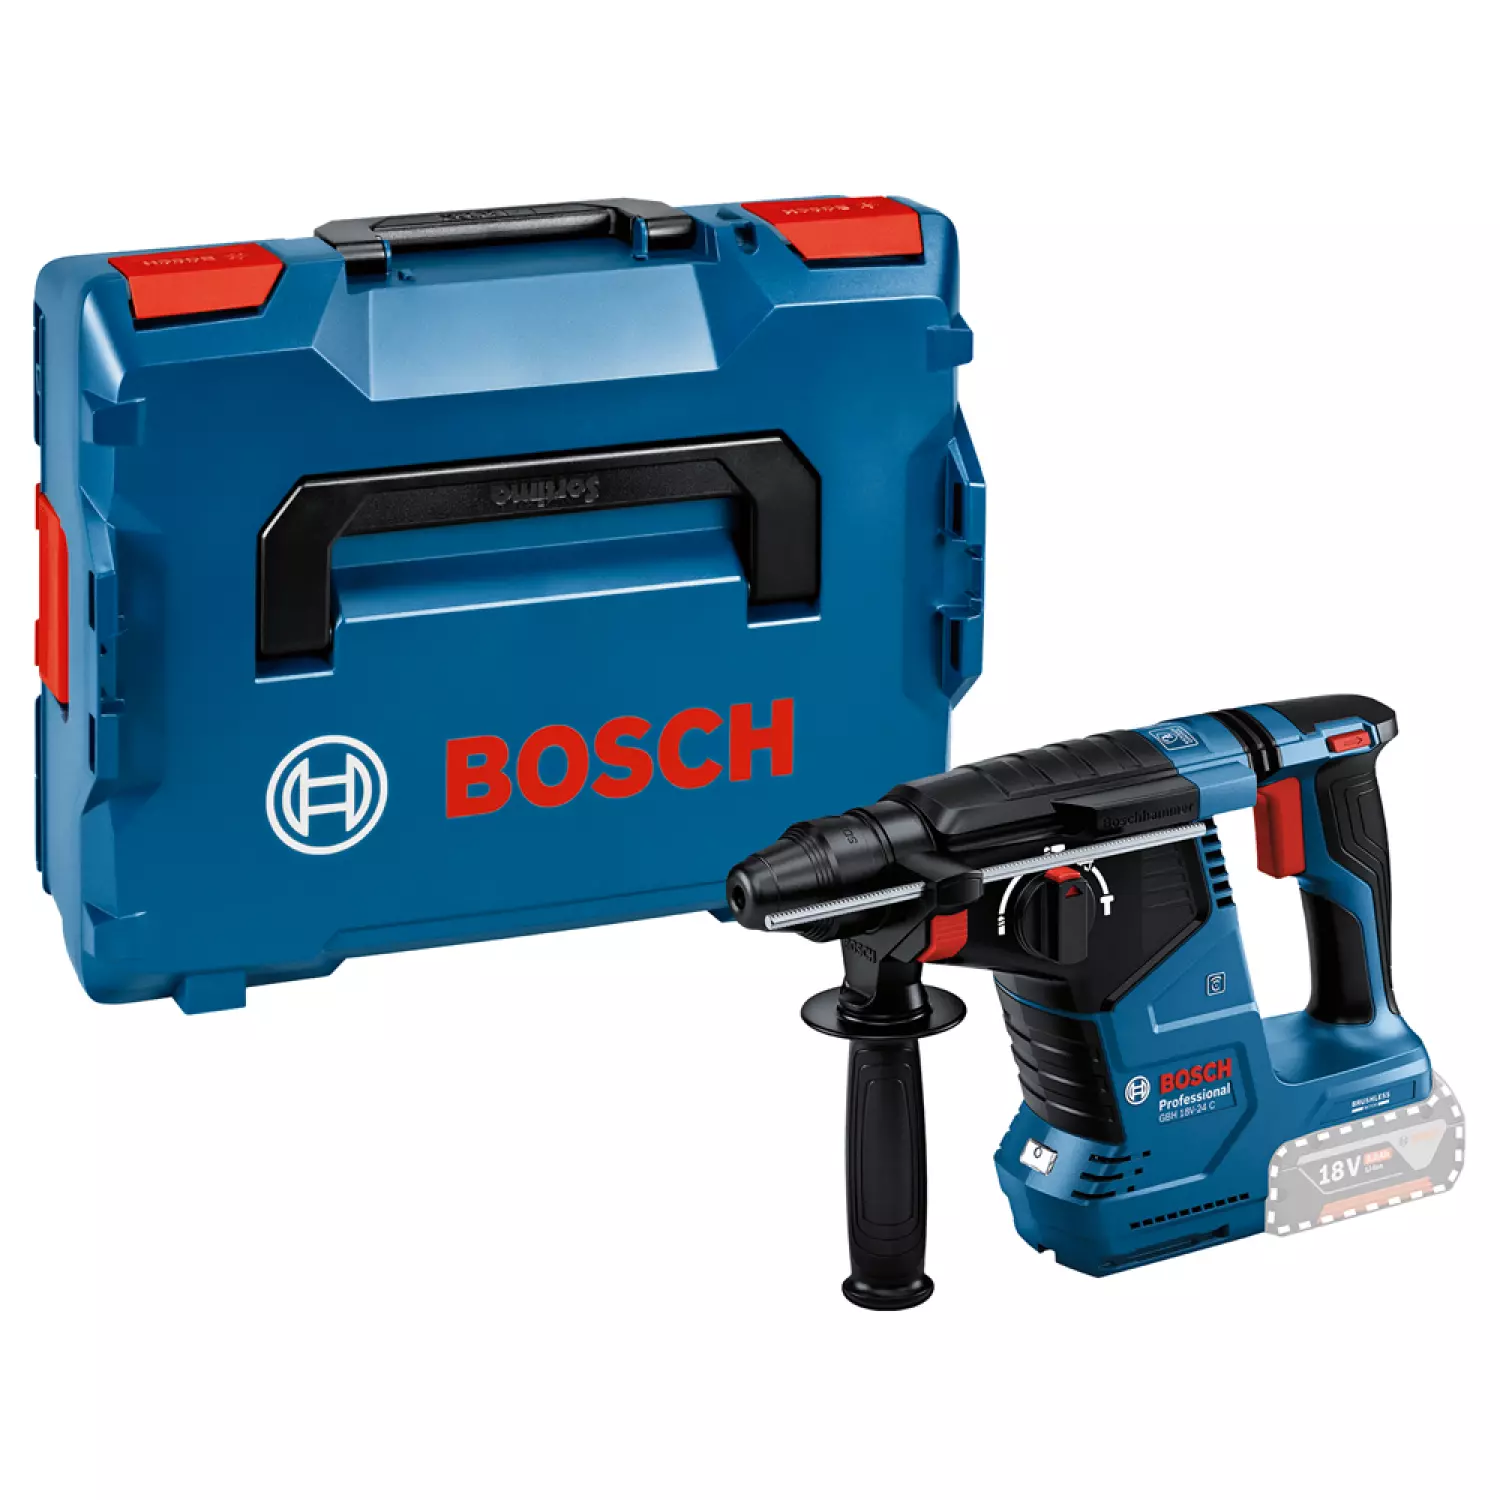 Bosch GBH 18V-24 C Marteau perforateur sans fil-image